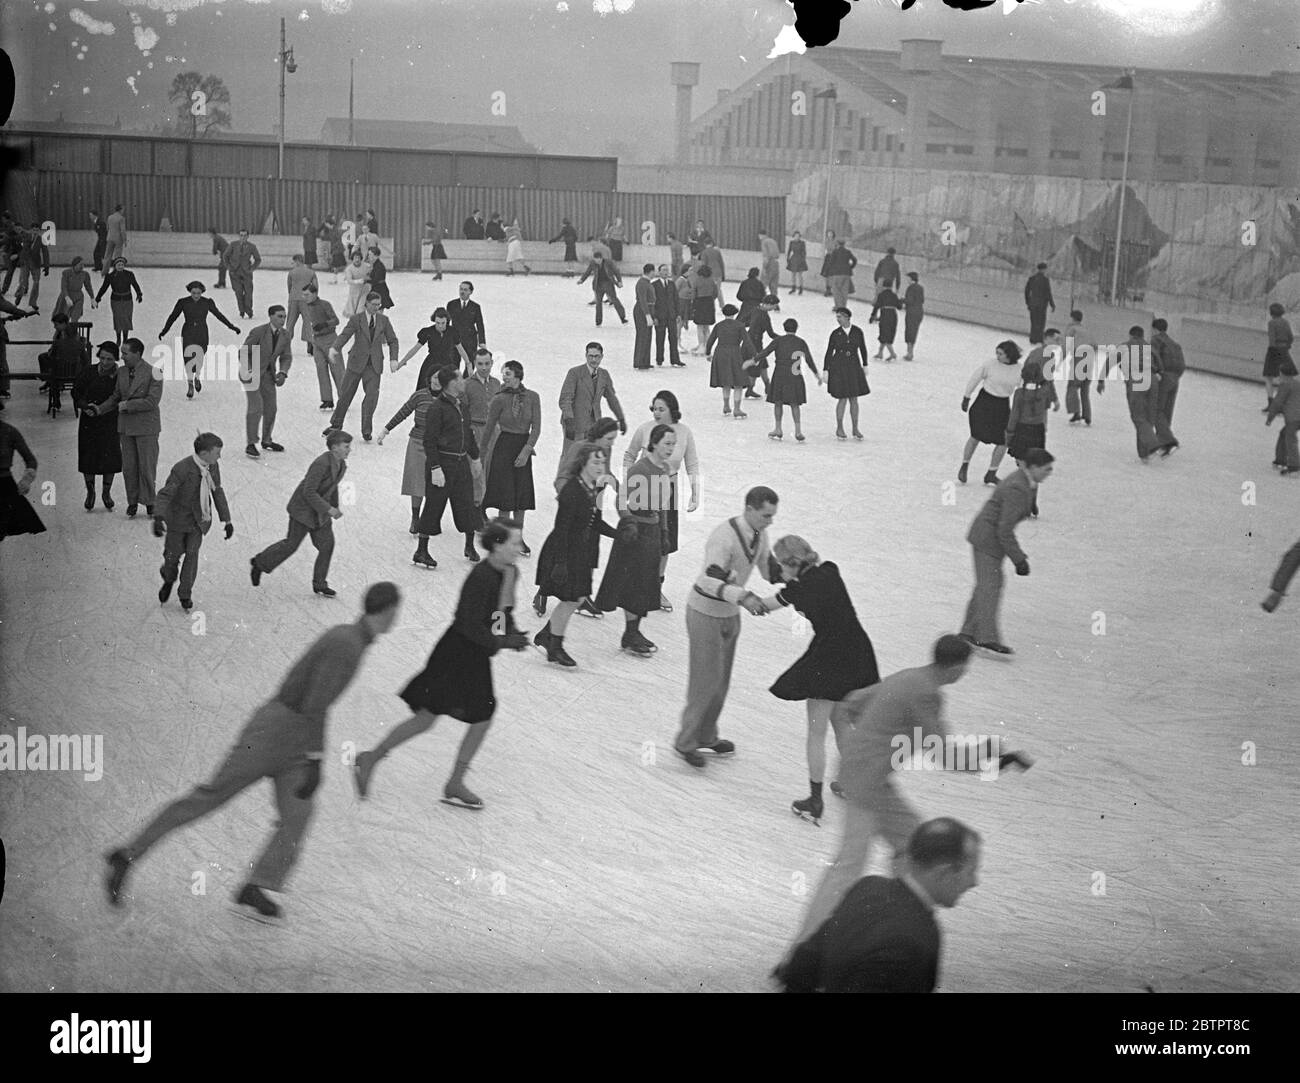 Suisse à Londres. La première petite saison d'hiver a amené les amateurs de patinage à la patinoire Alpine de Wembley cet après-midi (dimanche). Spectacles photo, patineurs sur glace à la patinoire Alpine, Wembley. 14 novembre 1937 Banque D'Images